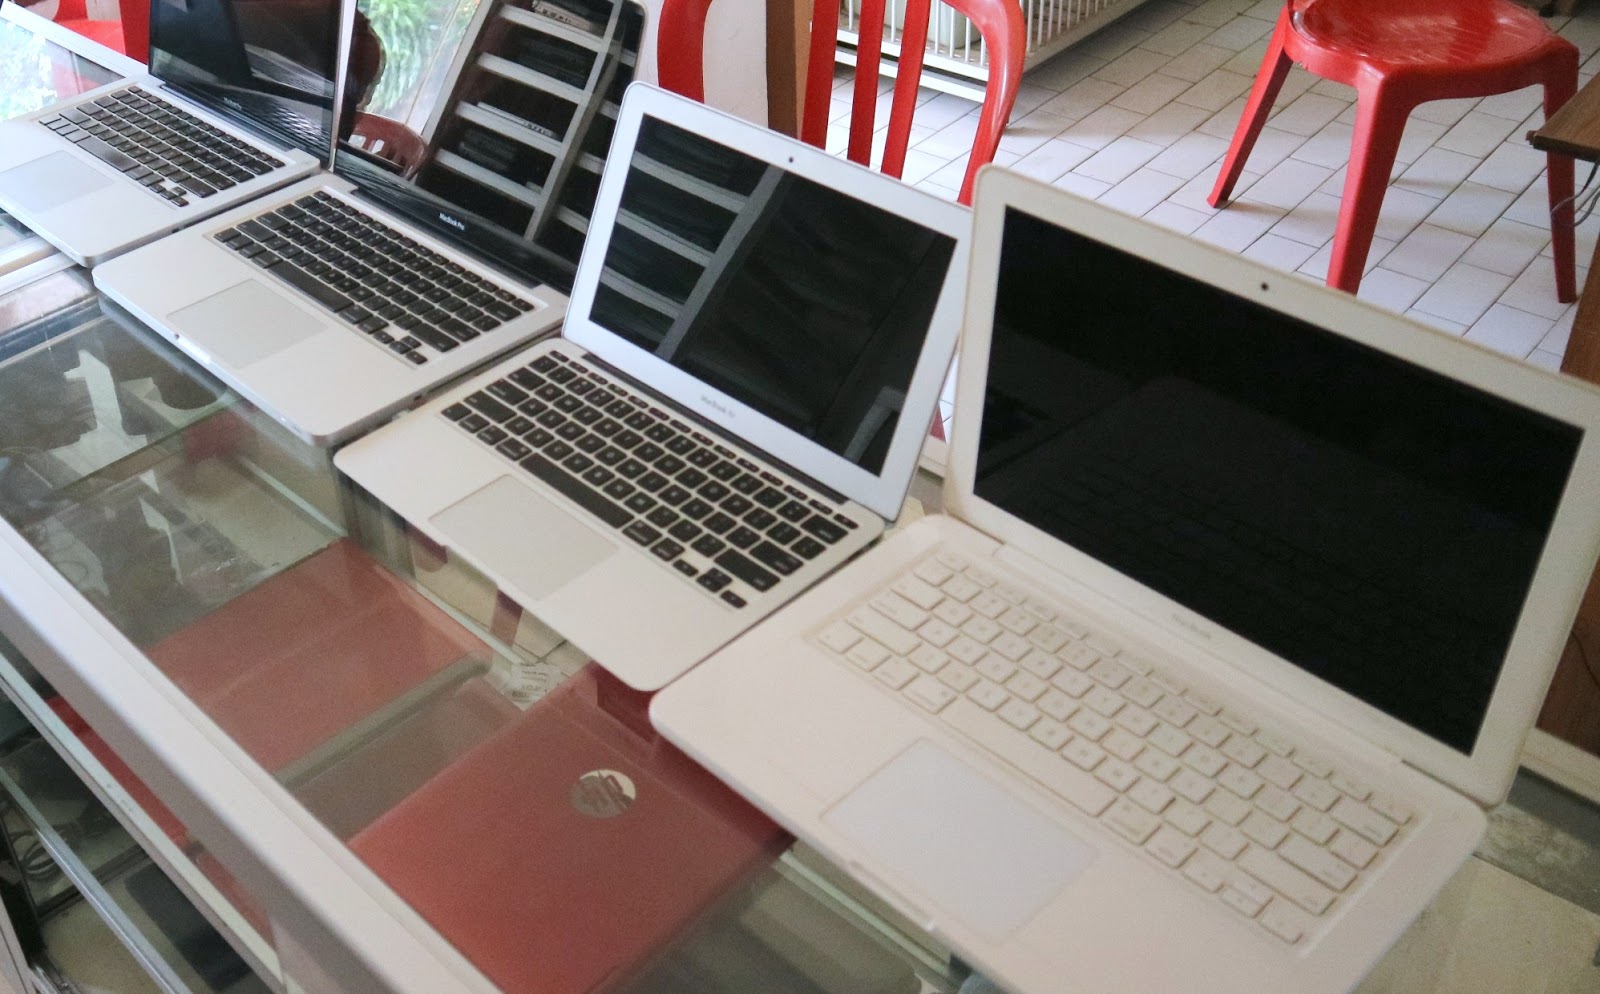 Beli Laptop Mati dan Rusak Di Malang | Jual Beli Laptop Bekas, Kamera